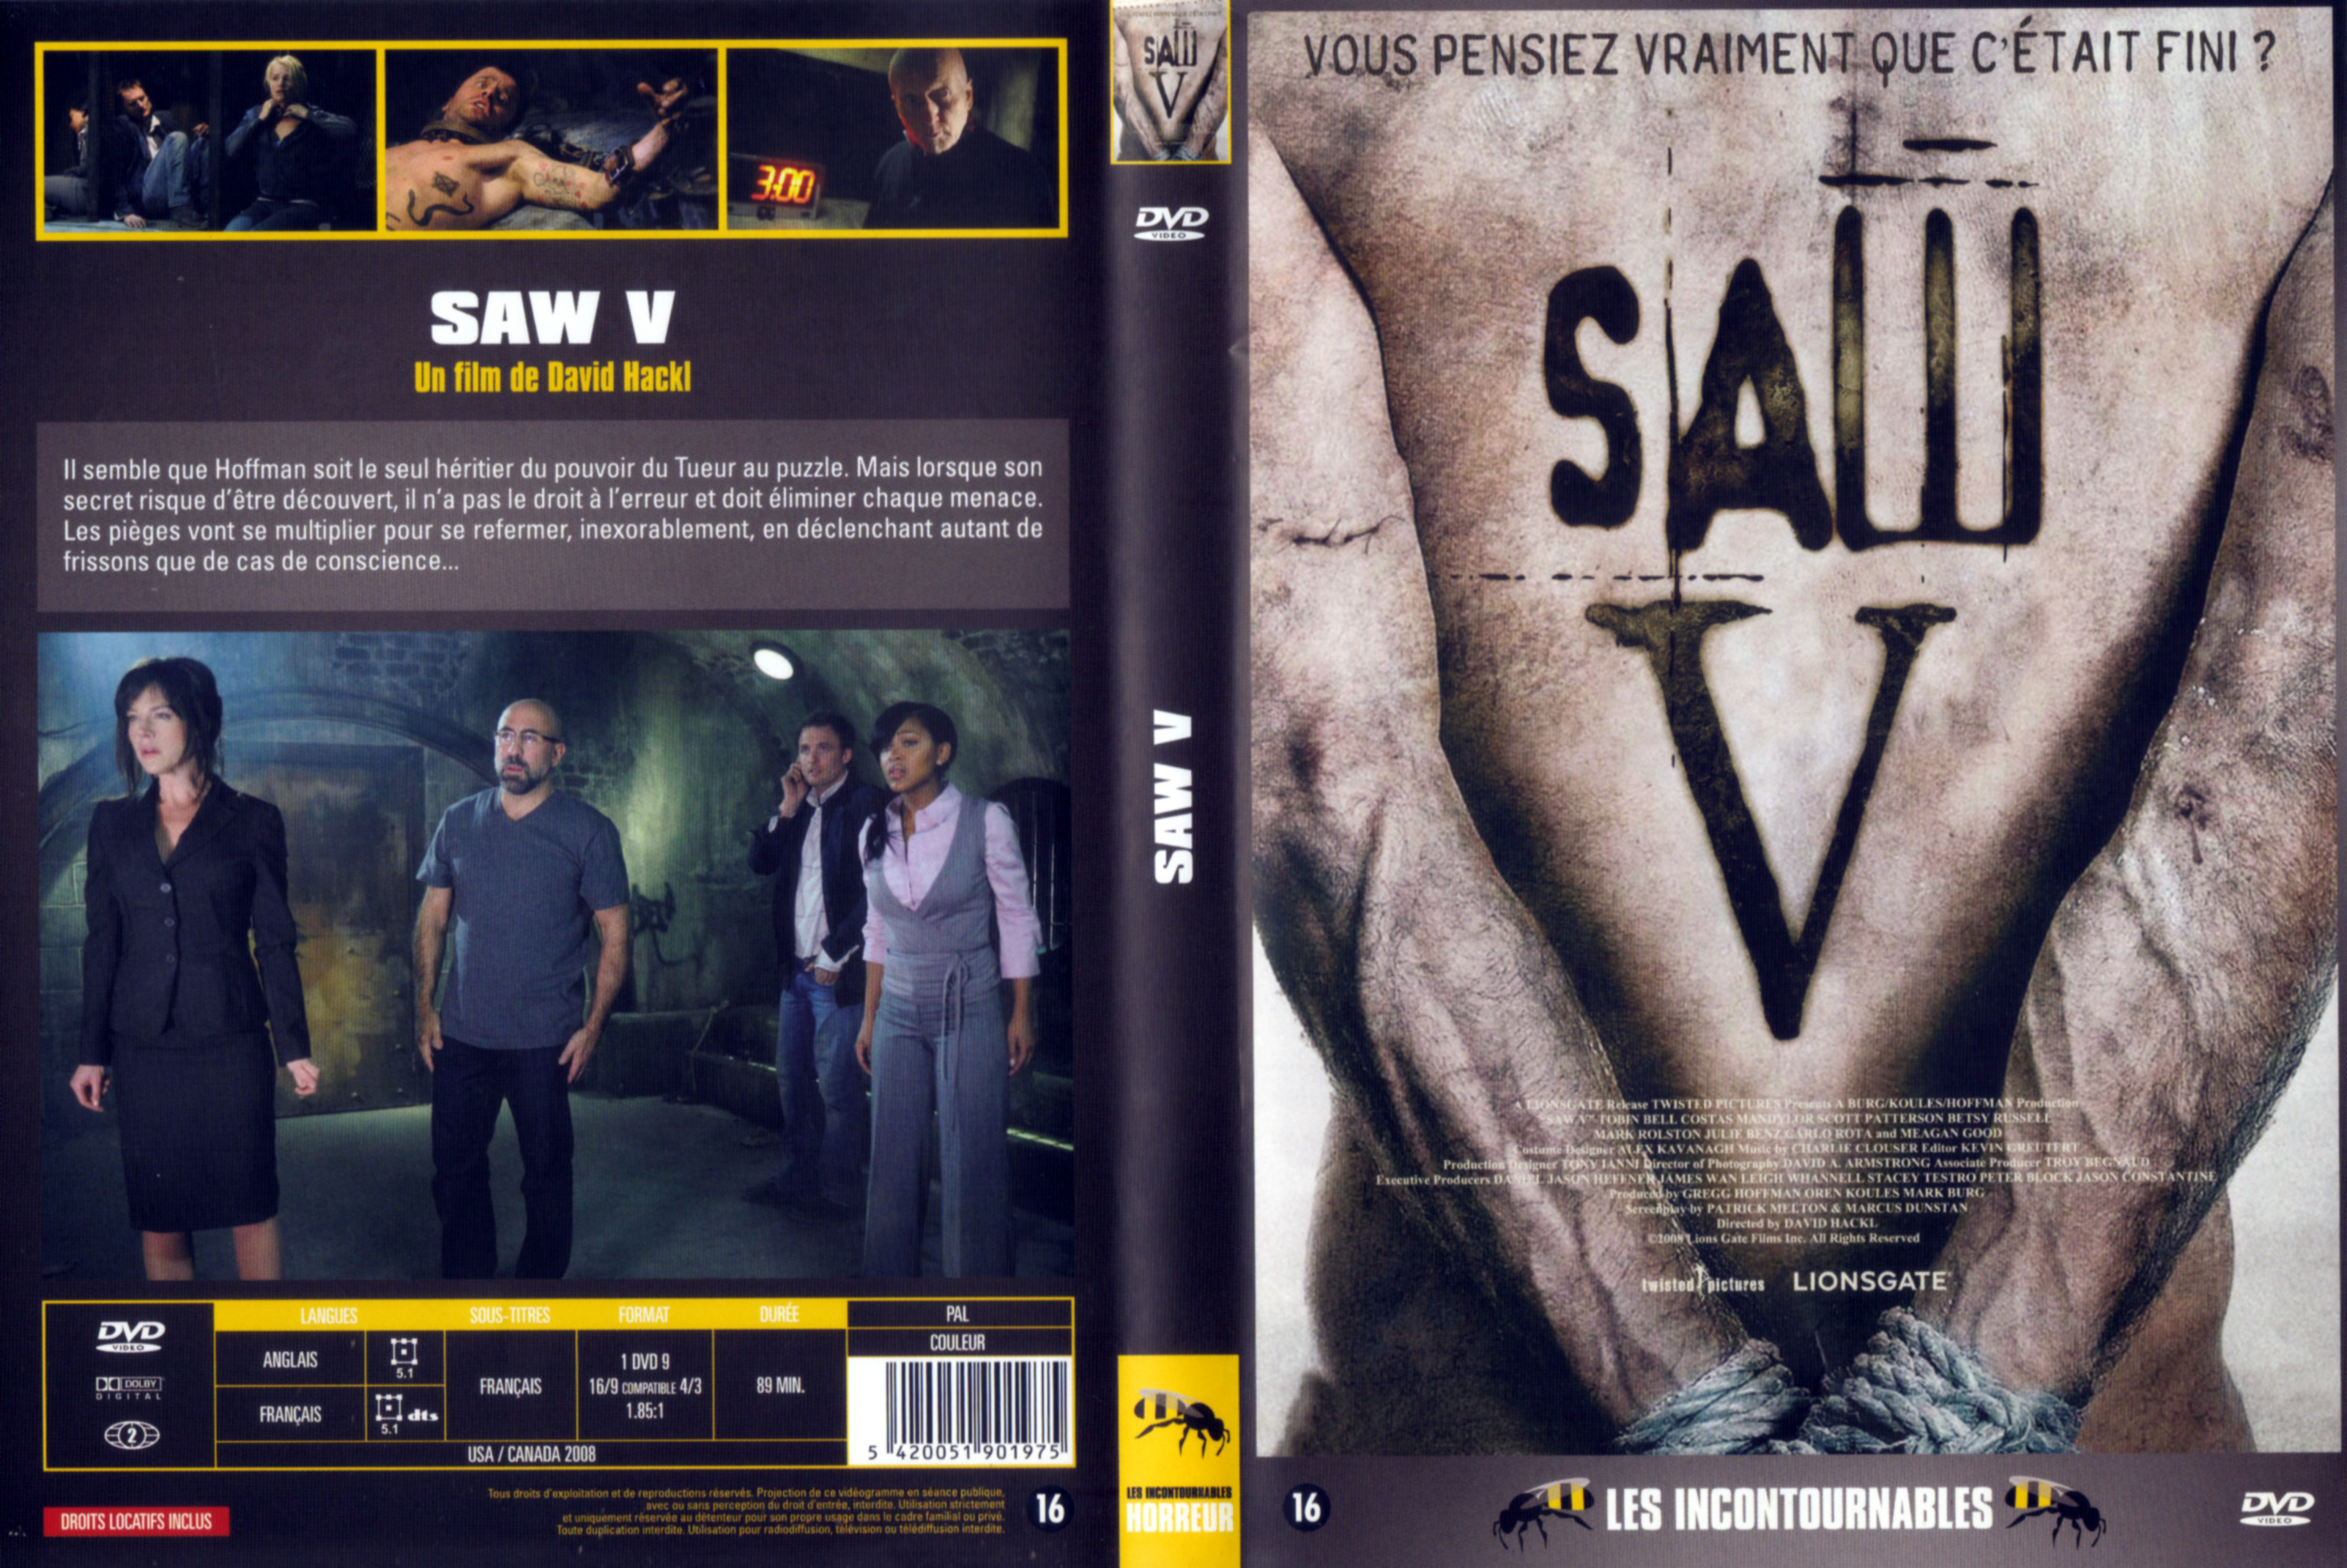 Jaquette DVD Saw 5 v3